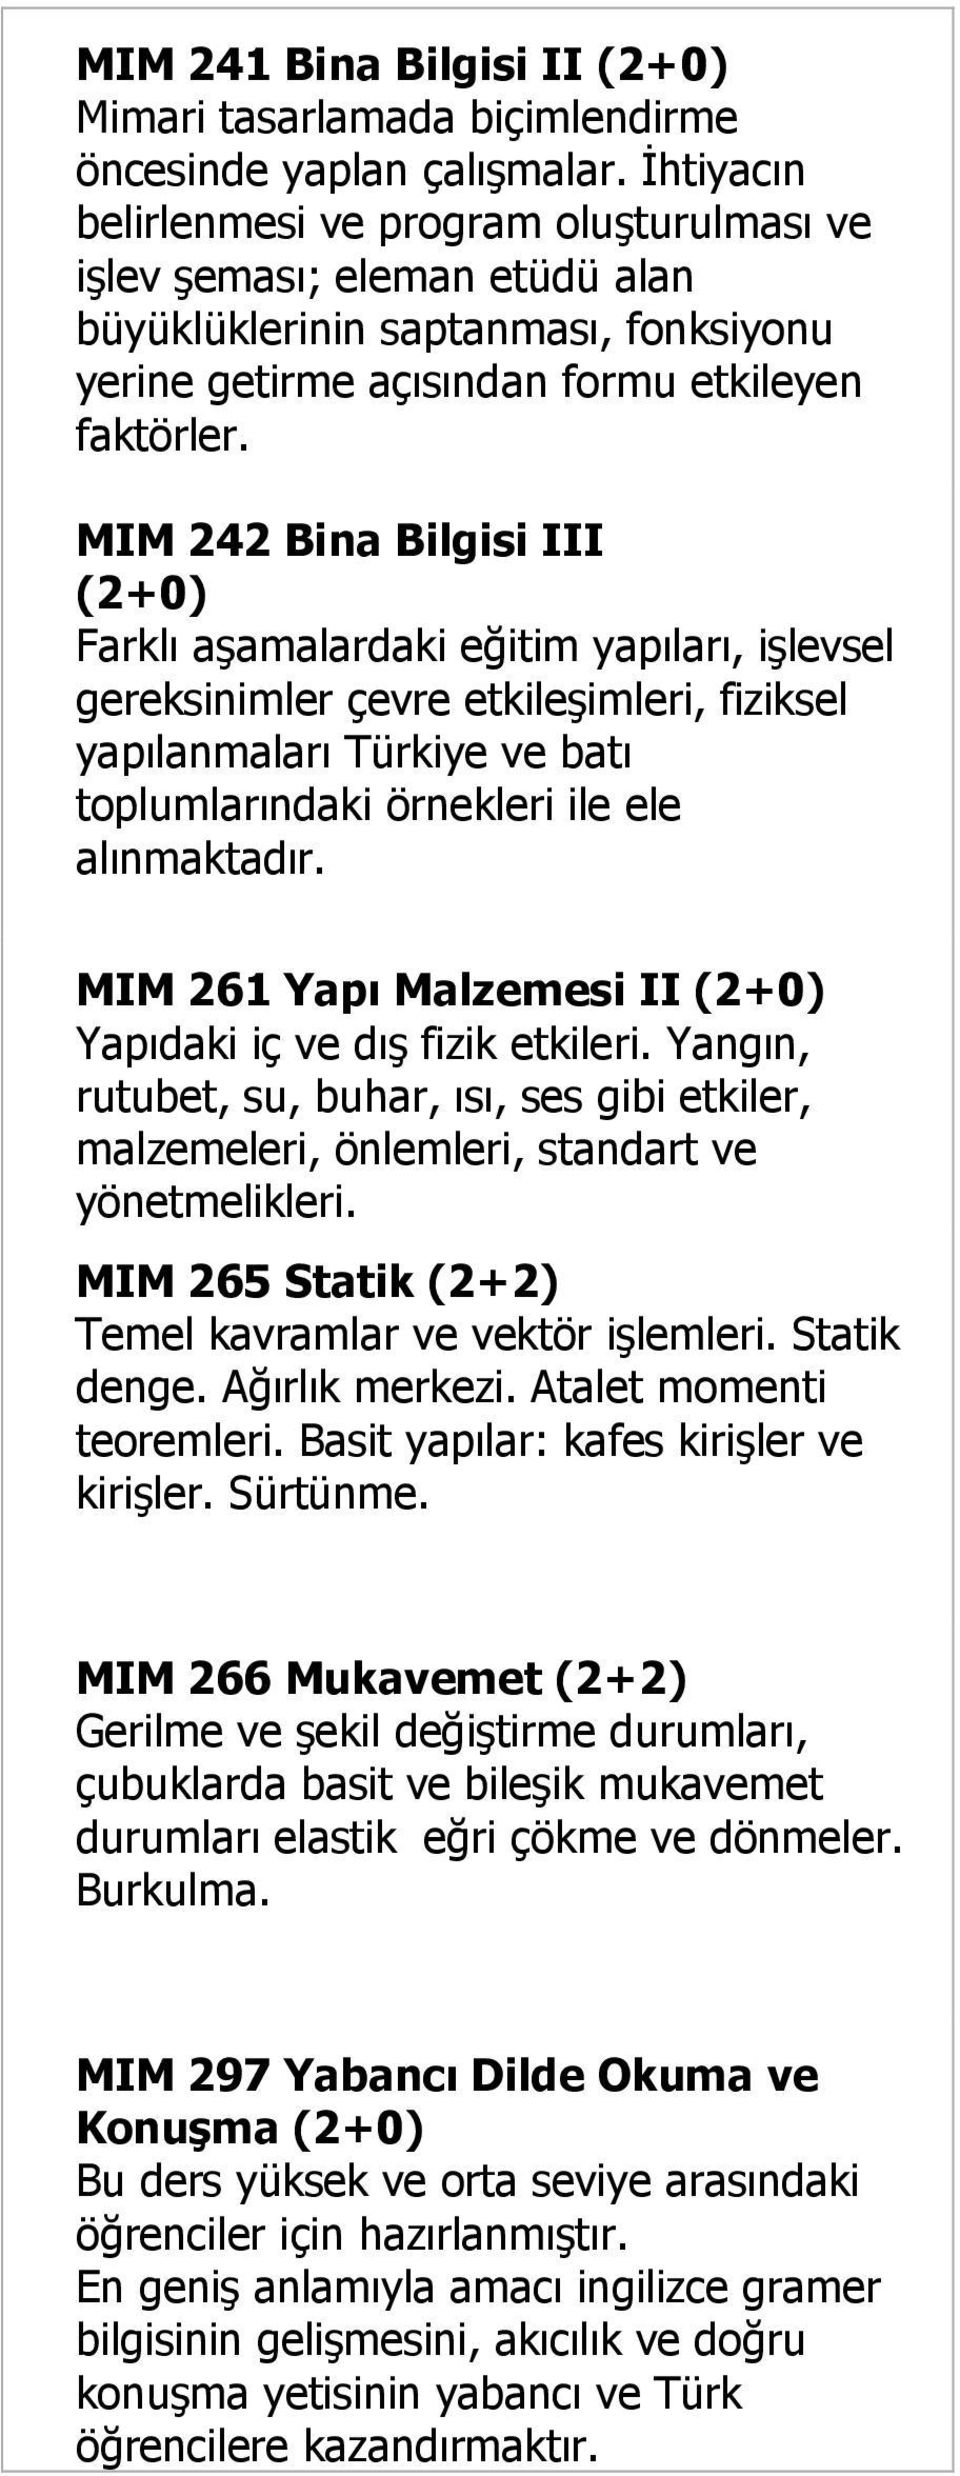 MIM 242 Bina Bilgisi III Farklı aşamalardaki eğitim yapıları, işlevsel gereksinimler çevre etkileşimleri, fiziksel yapılanmaları Türkiye ve batı toplumlarındaki örnekleri ile ele alınmaktadır.